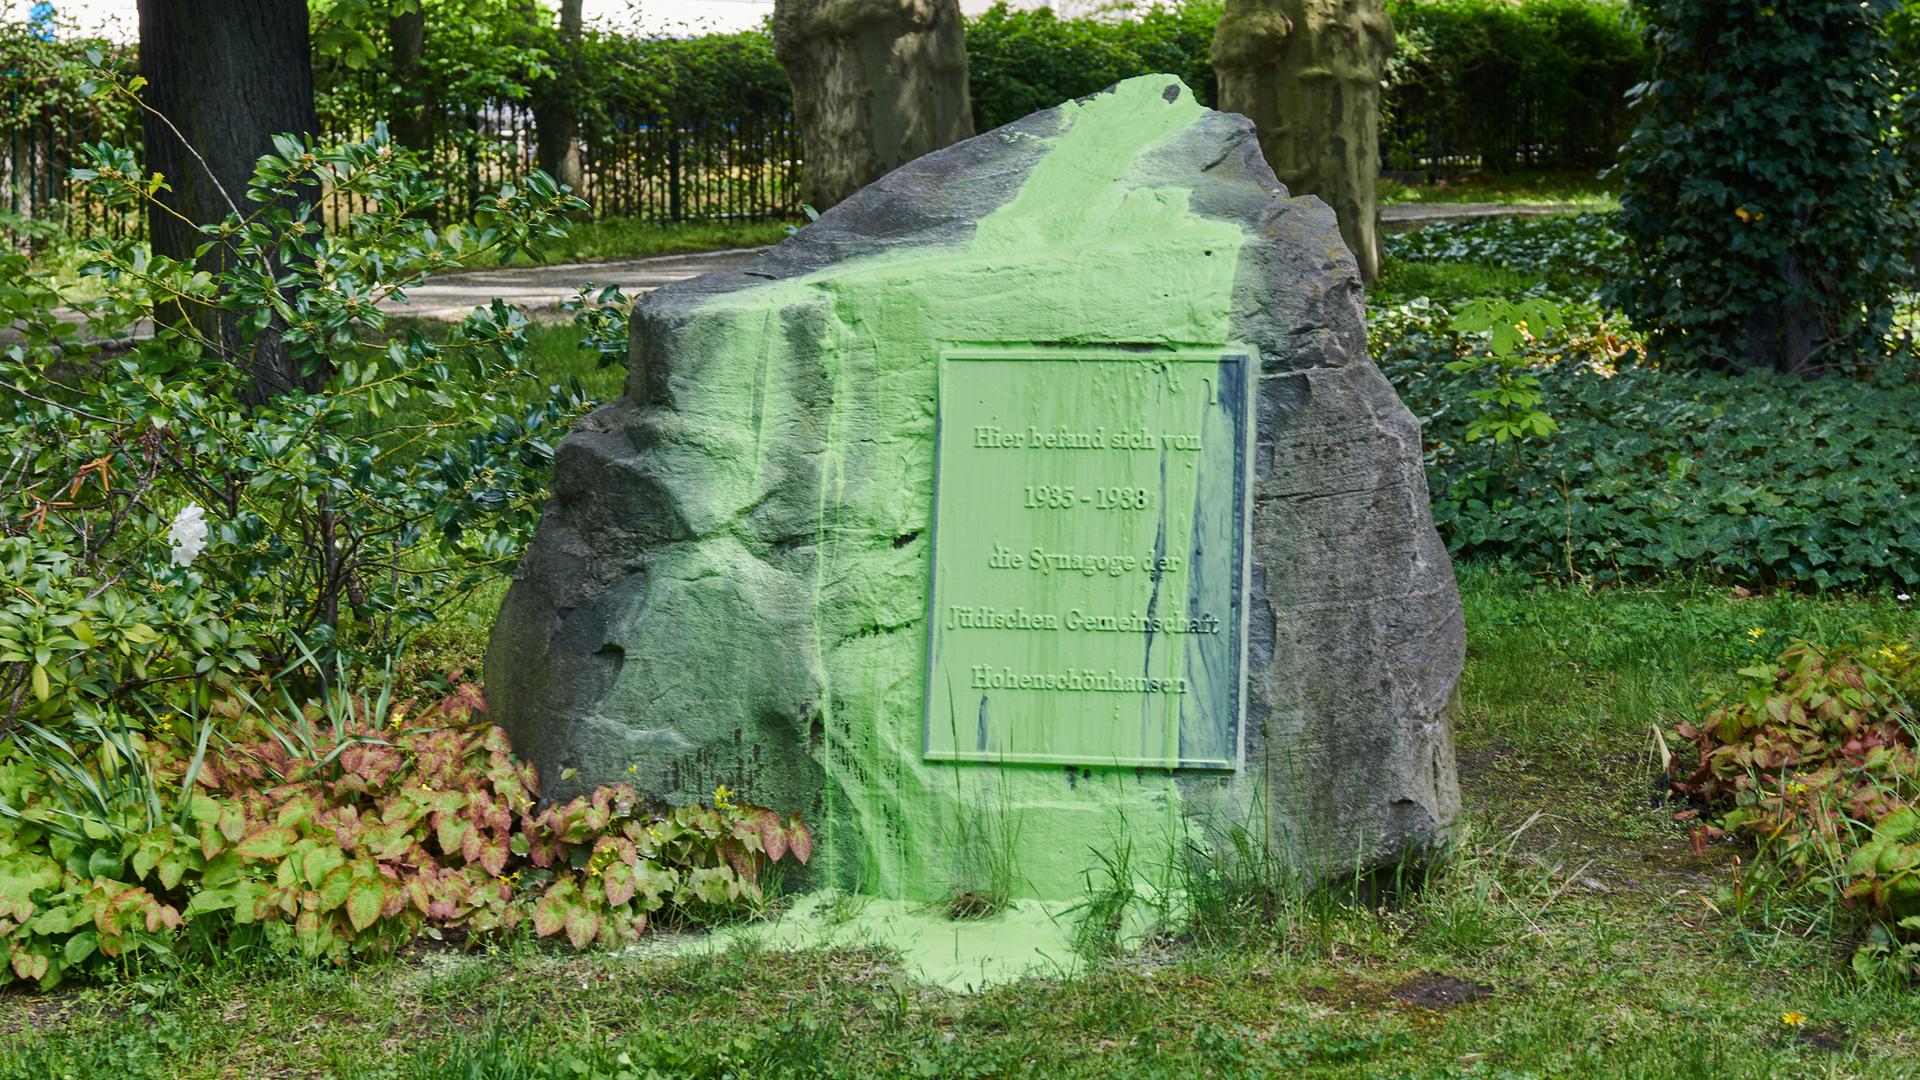 Im Juni 2021 wurde der Gedenkstein für die Synagoge der jüdischen Gemeinde in Hohenschönhausen, die 1938 zerstört wurde, mit grüner Farbe beschmiert.